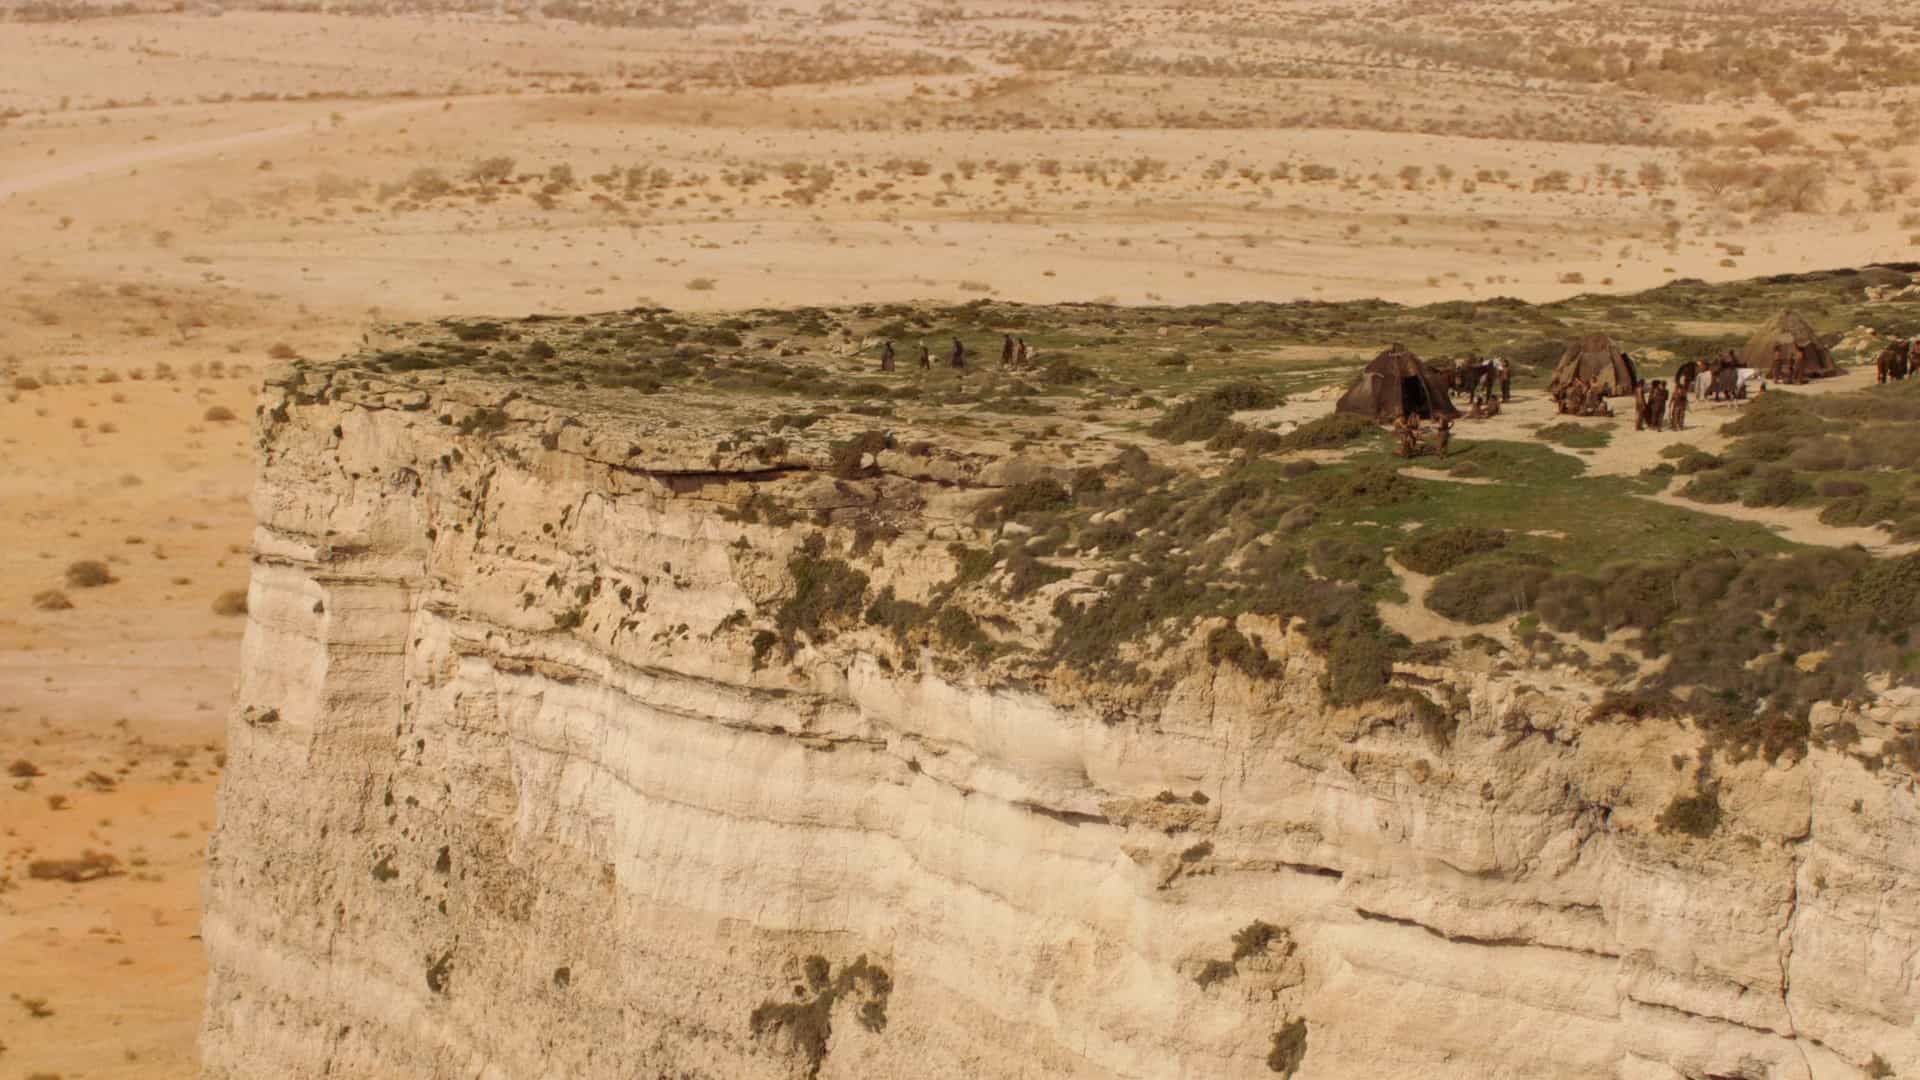 A scene at Mtahleb Cliffs Malta.